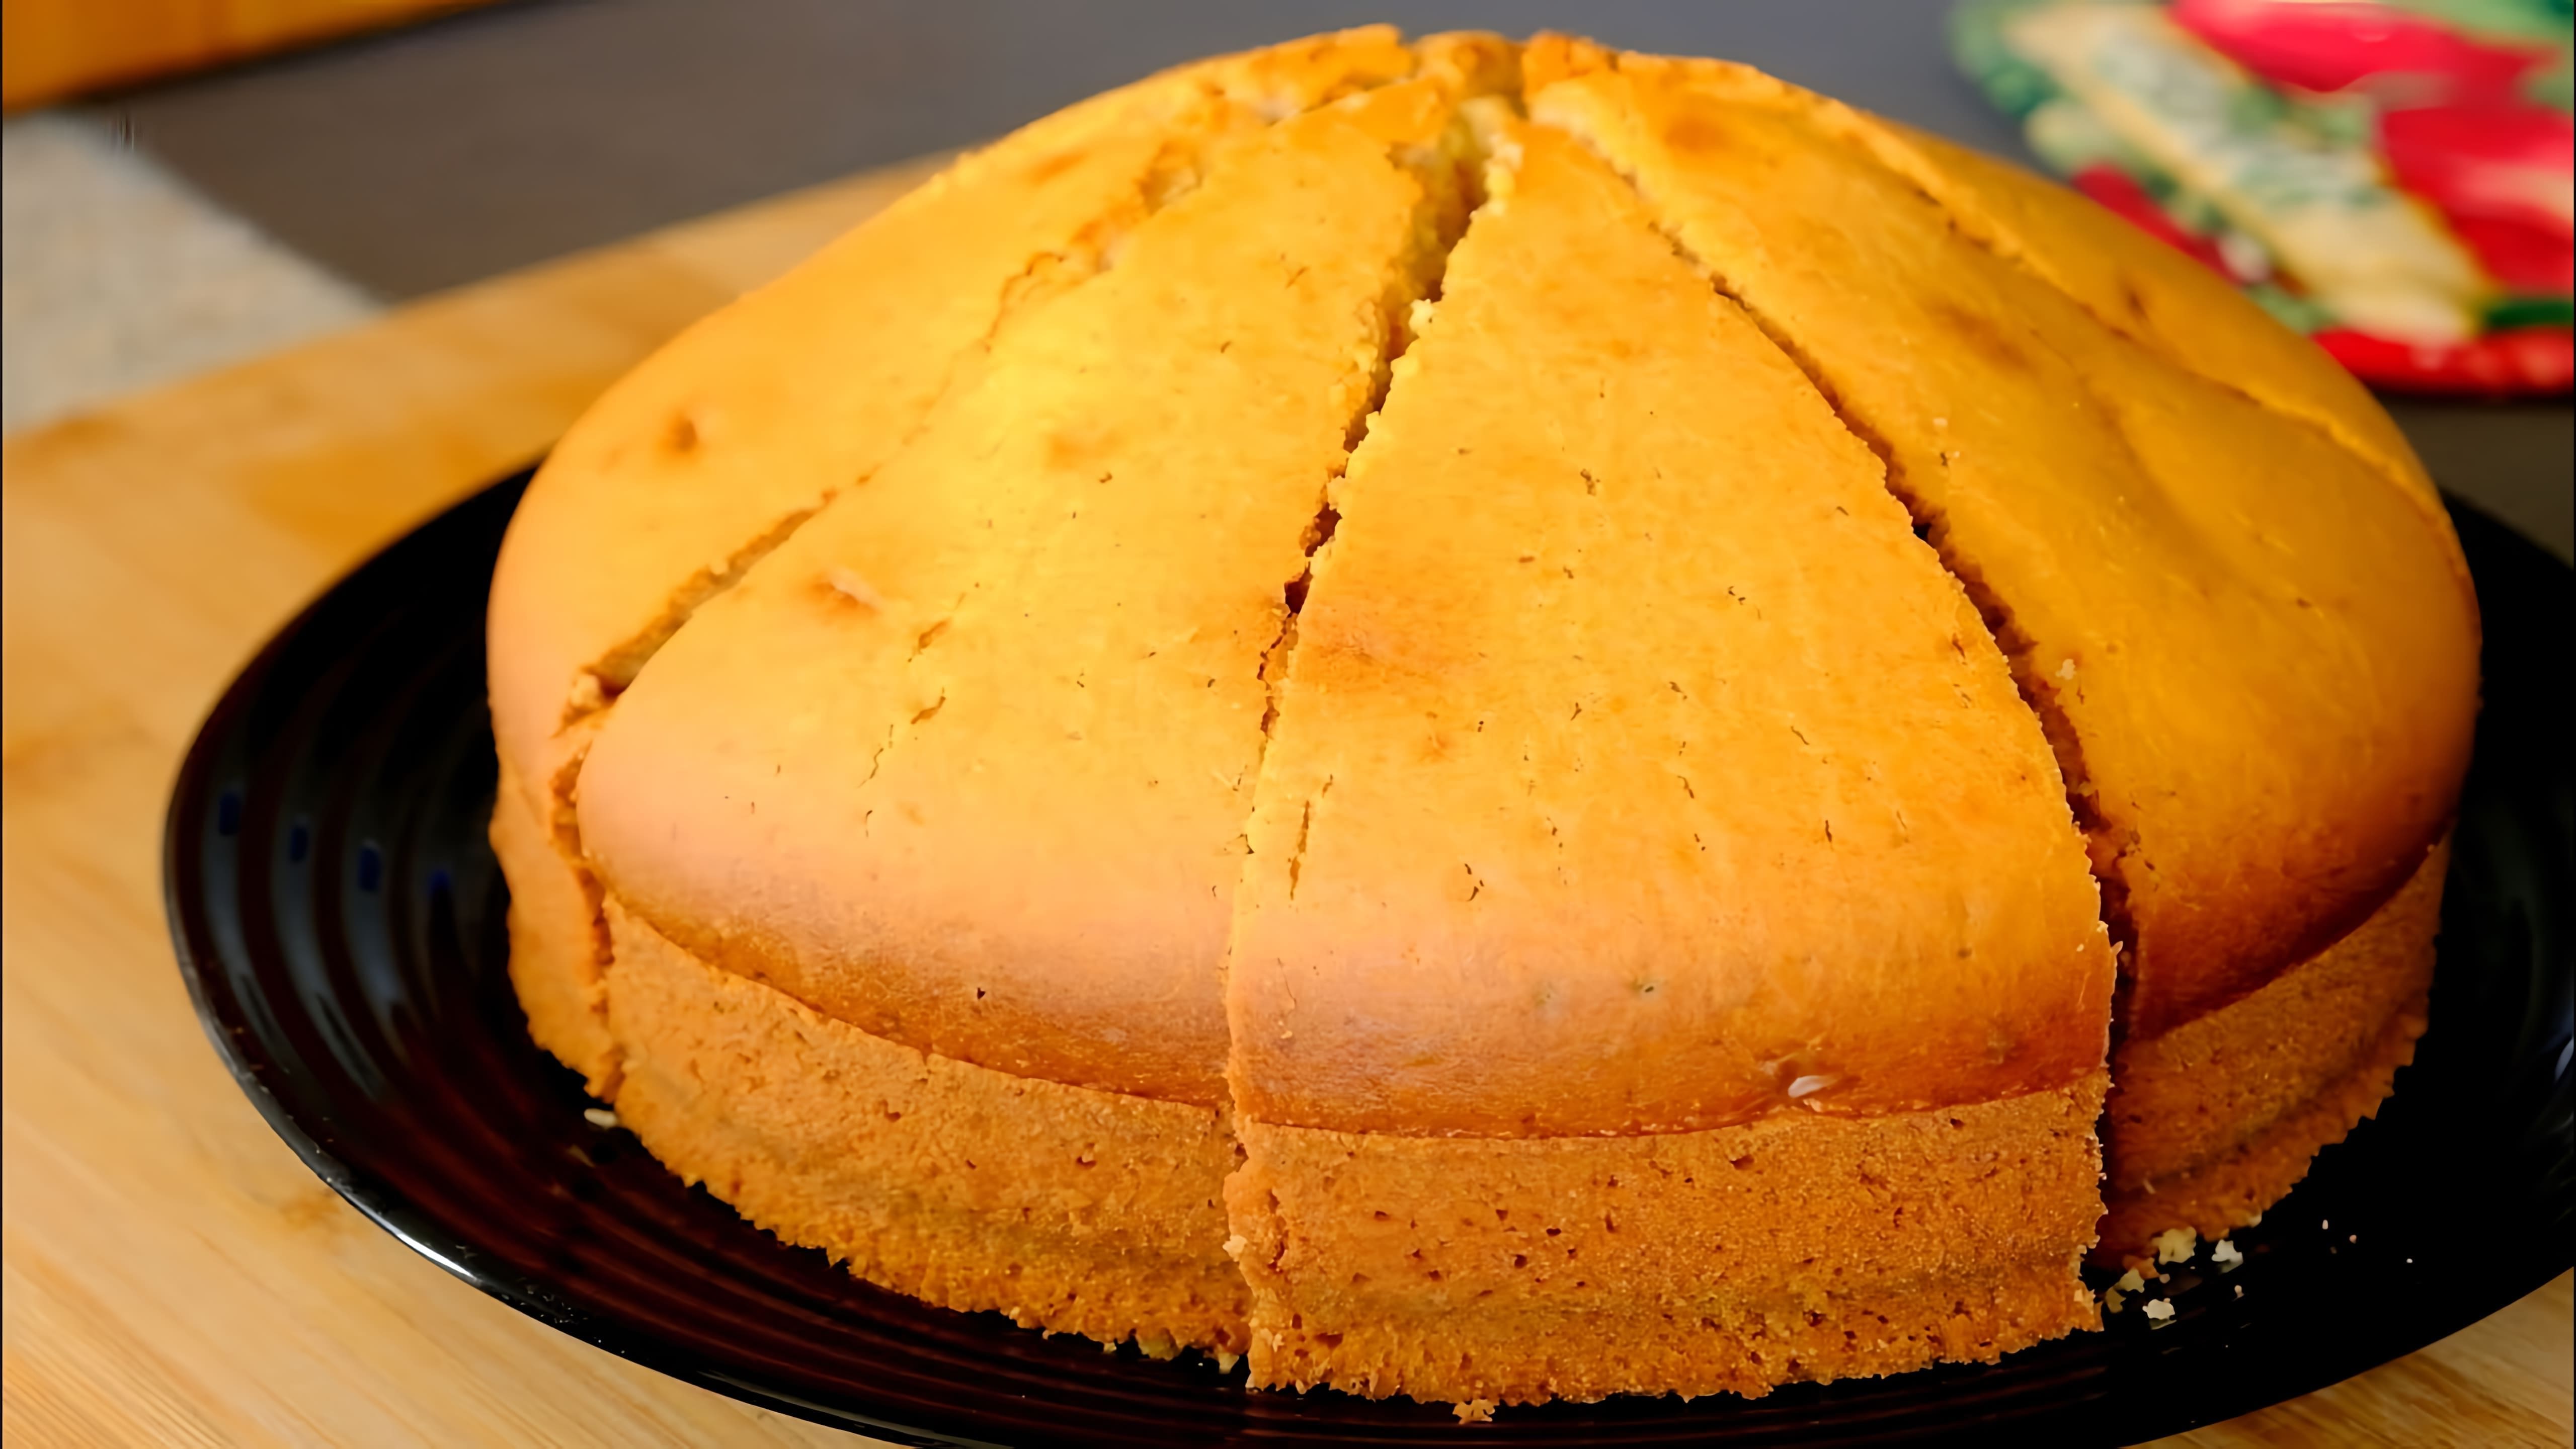 В этом видео демонстрируется рецепт приготовления пышного пирога с сывороткой